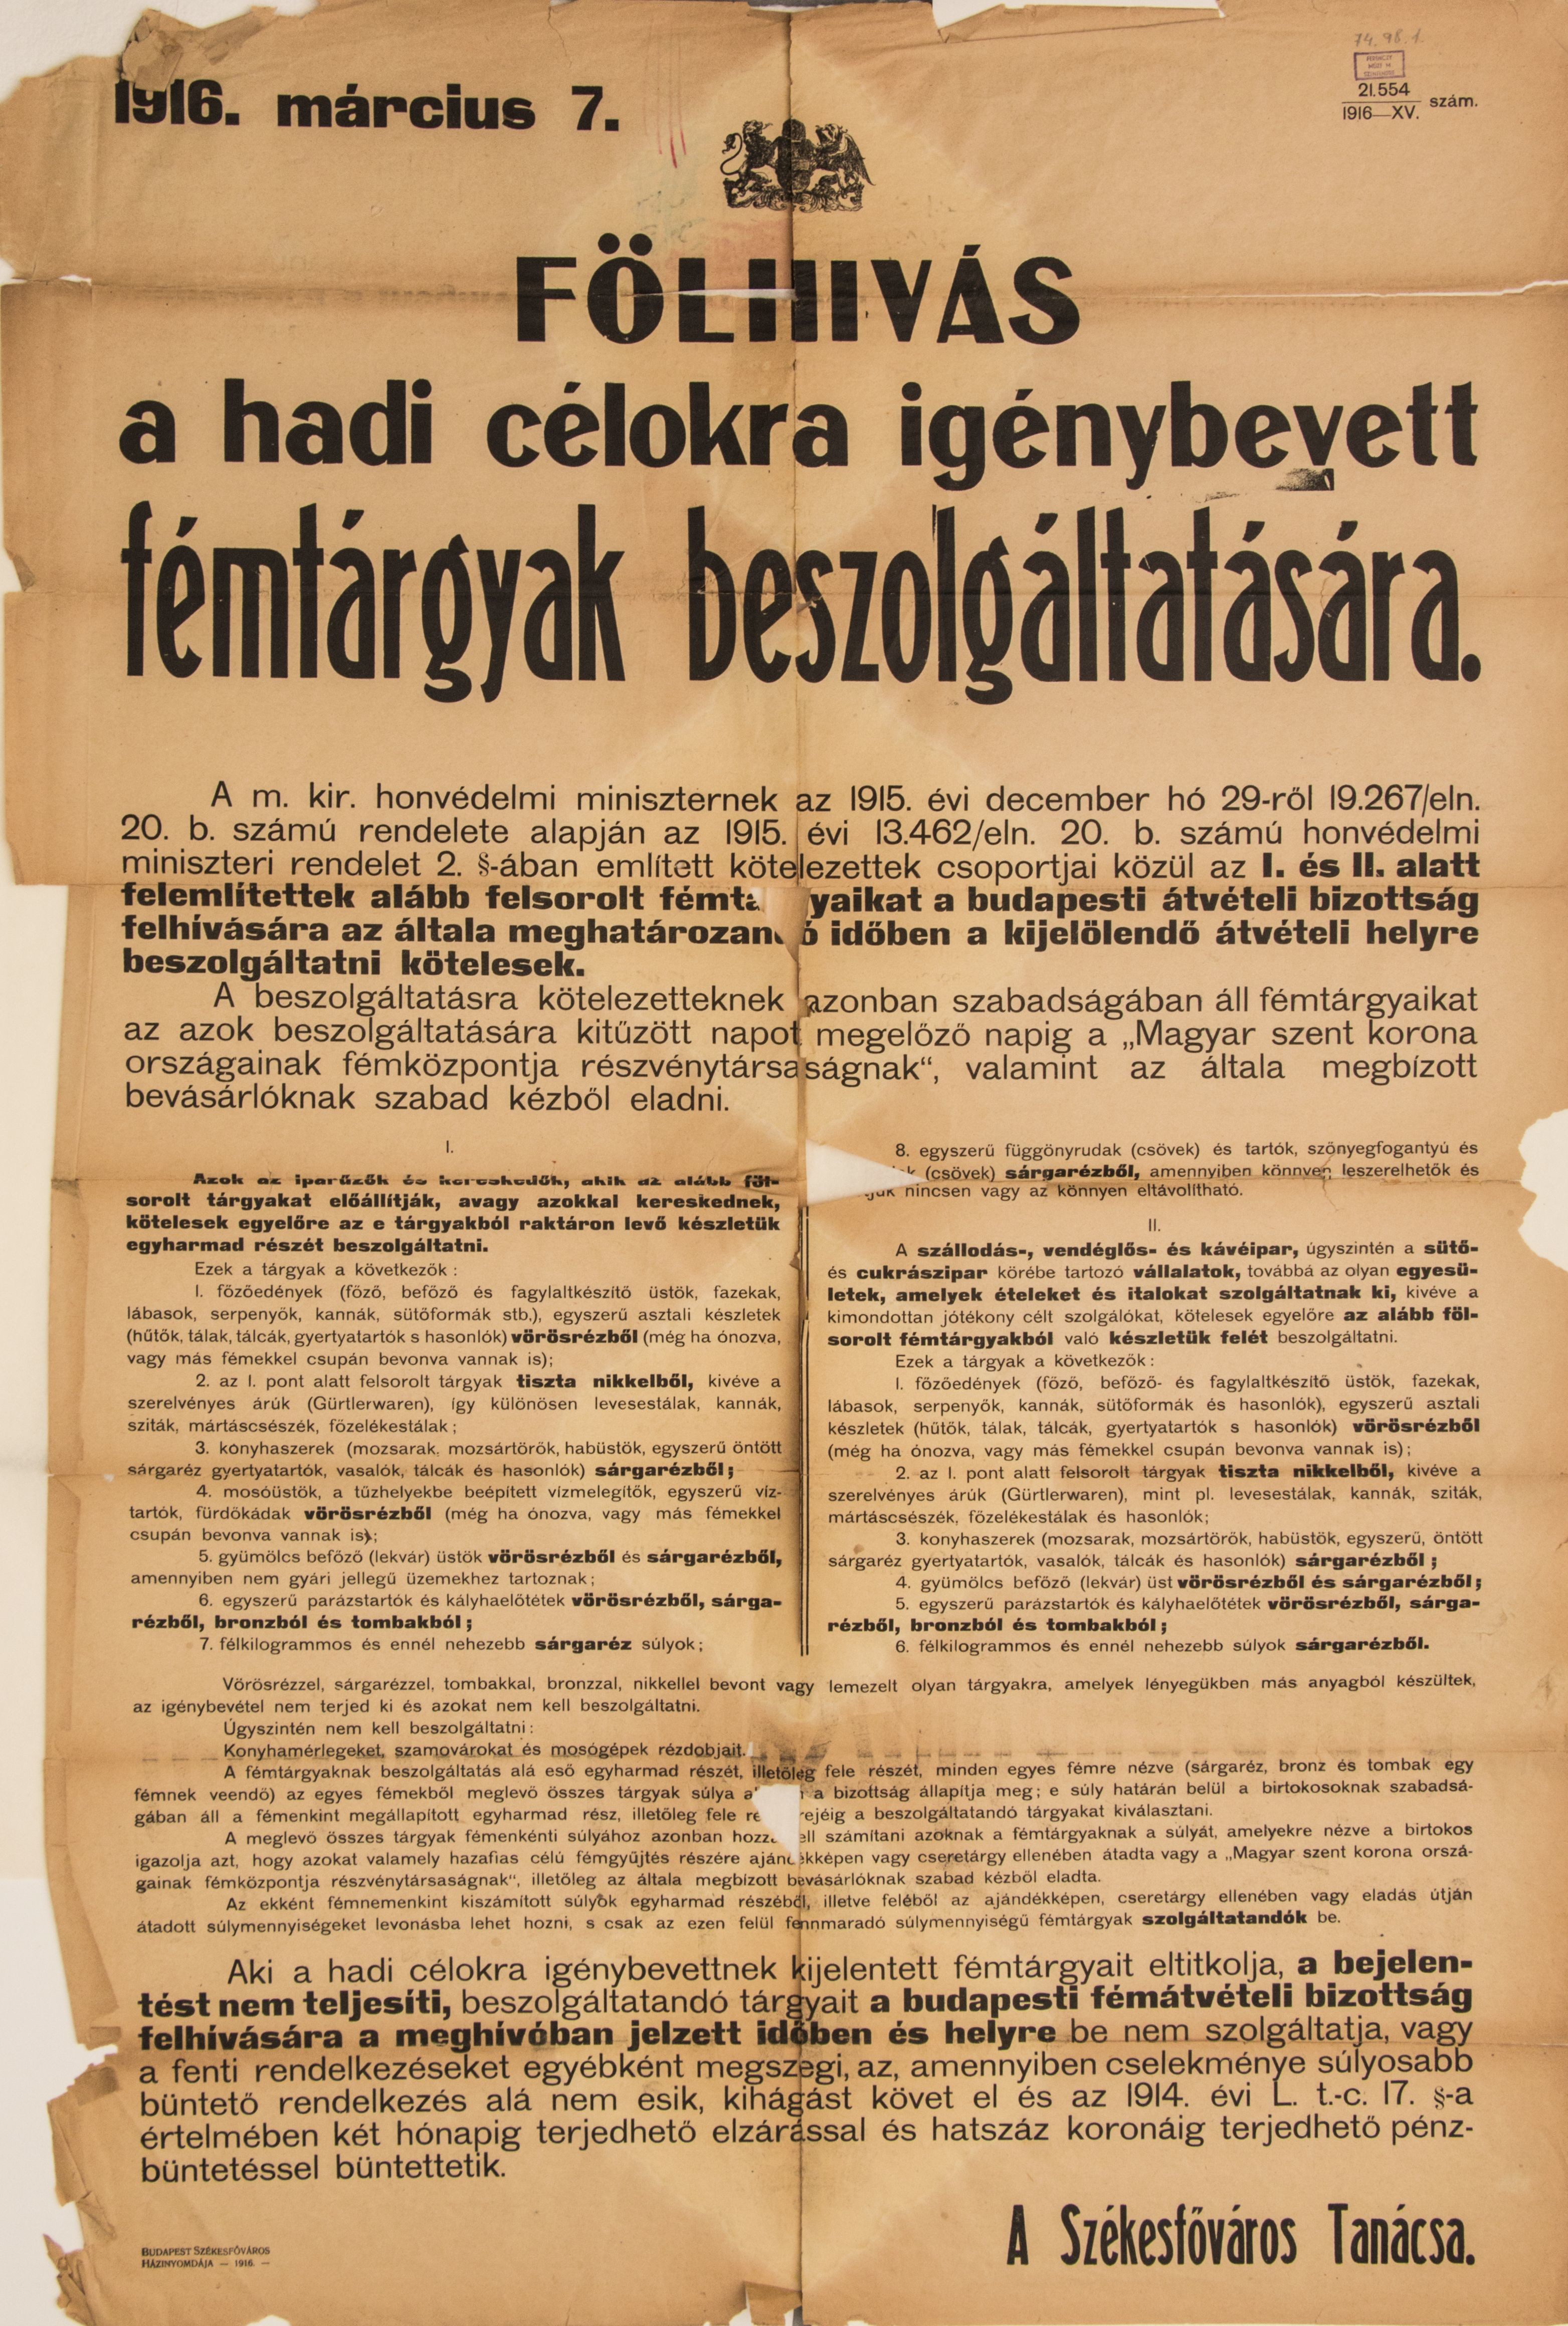 Felhívás hadicélra igénybe vett fémtárgyak beszolgáltatása, (Székesfőváros Tanácsa) 1916.03.07. (Ferenczy Múzeumi Centrum CC BY-NC-SA)